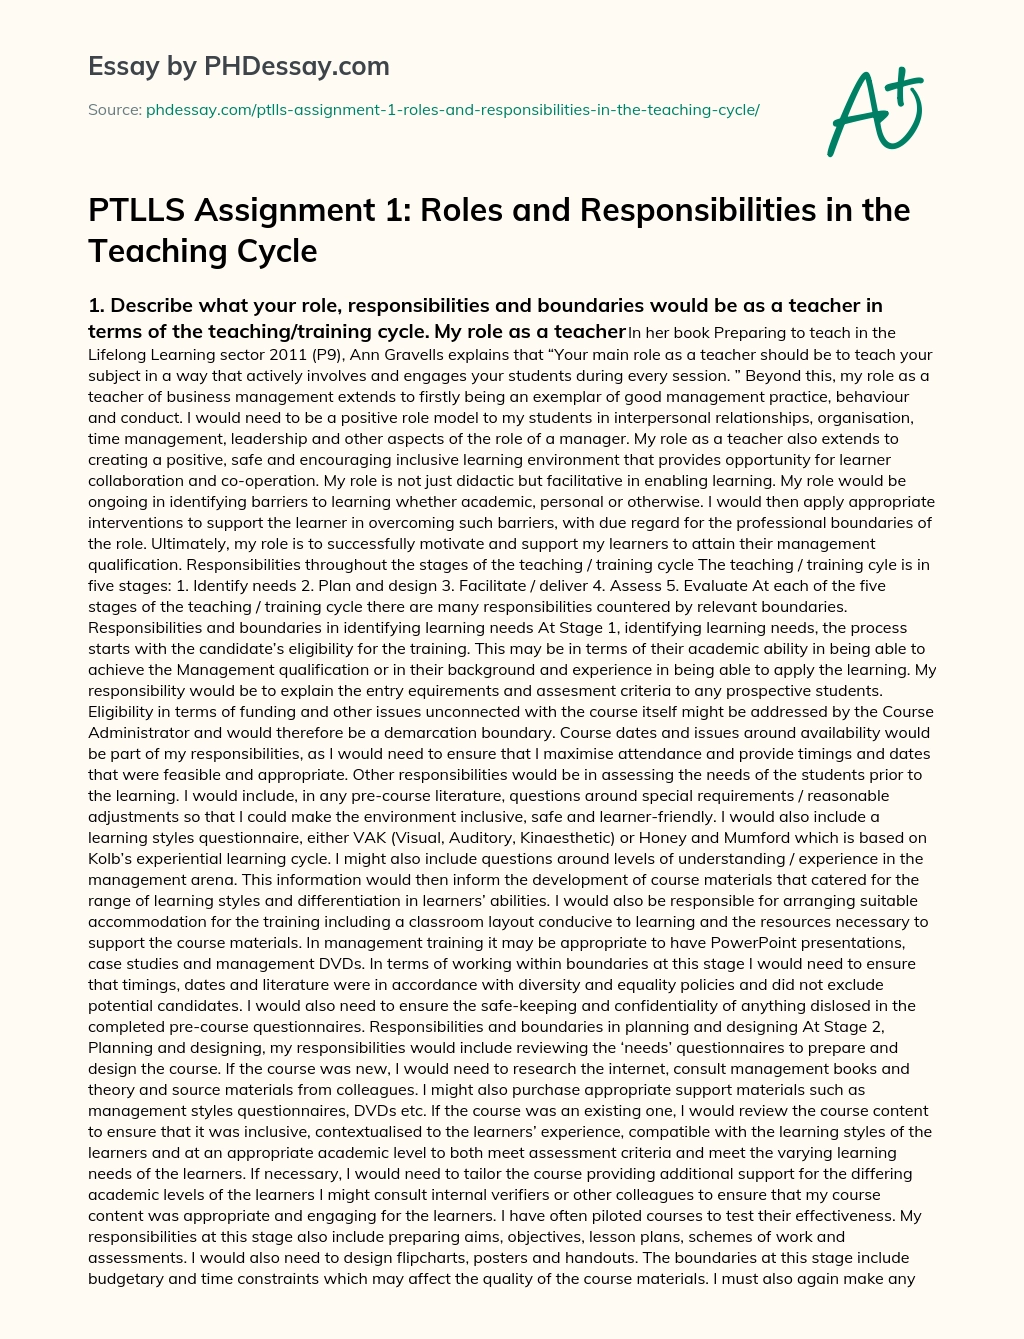 ptlls assignment 2